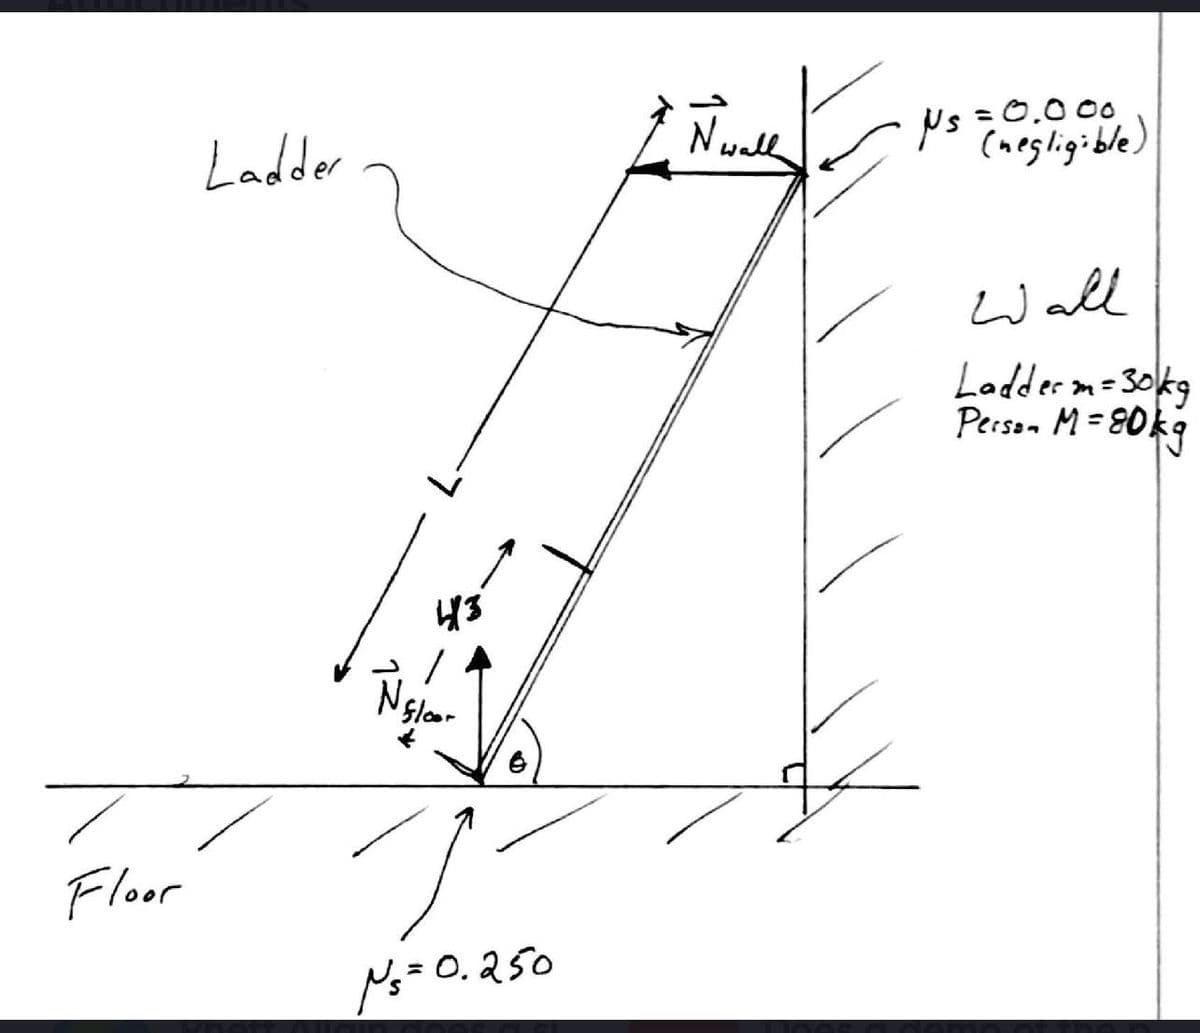 Ladder
Nwall
:0.000
(negligible)
Wall
Loddern=3okg
er m=30kg
Person M= 80k9
Floor
N=0.250
